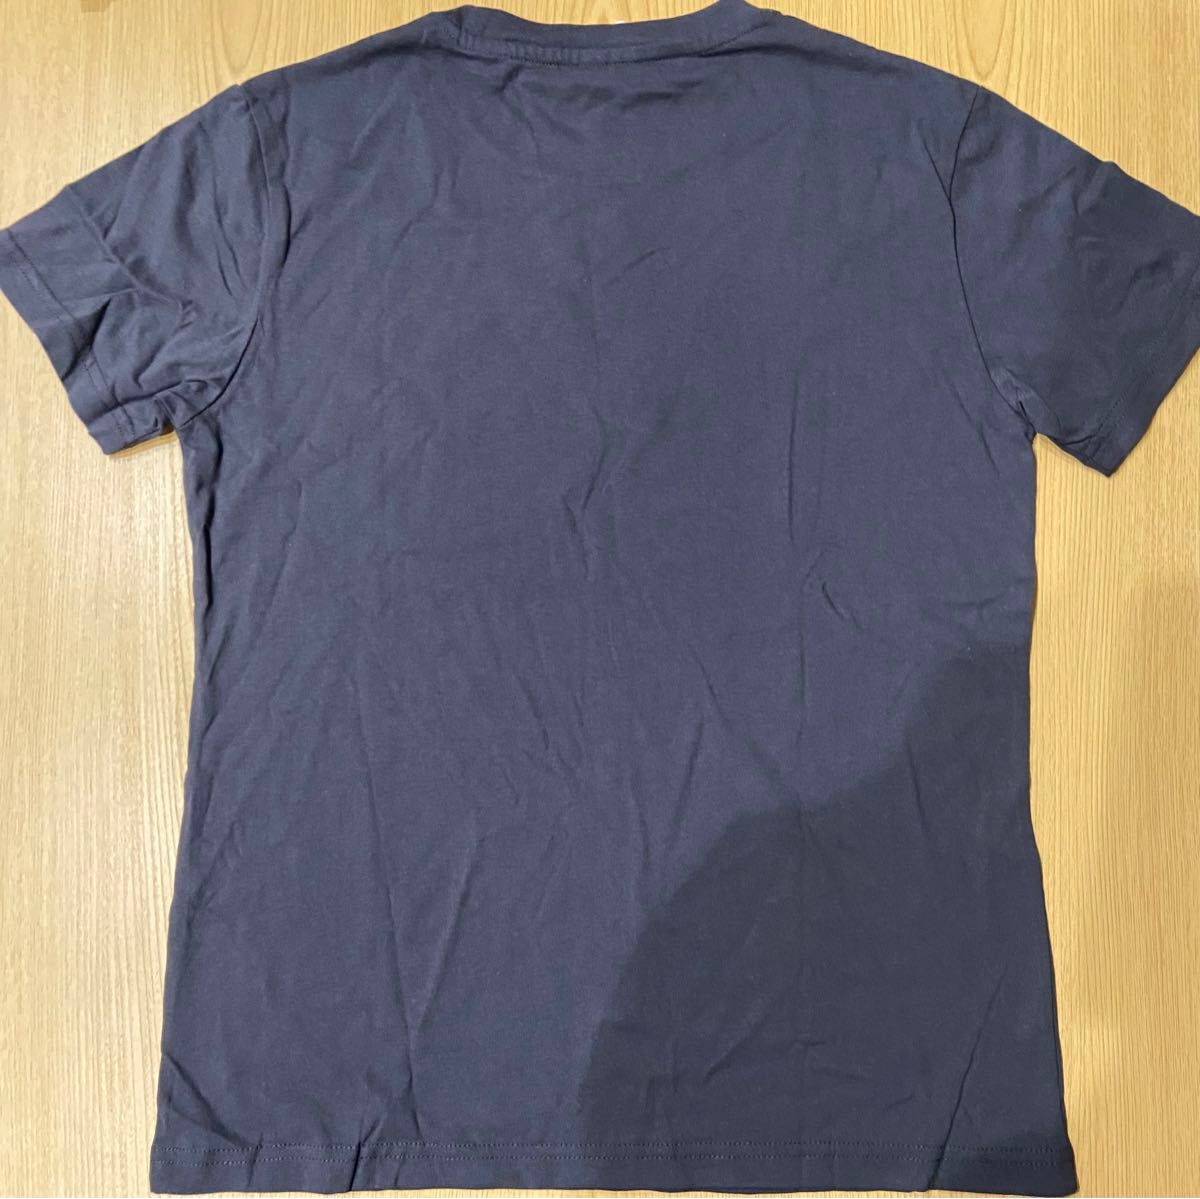 【新品未使用】BT21 Tシャツ Mサイズ 淡黒